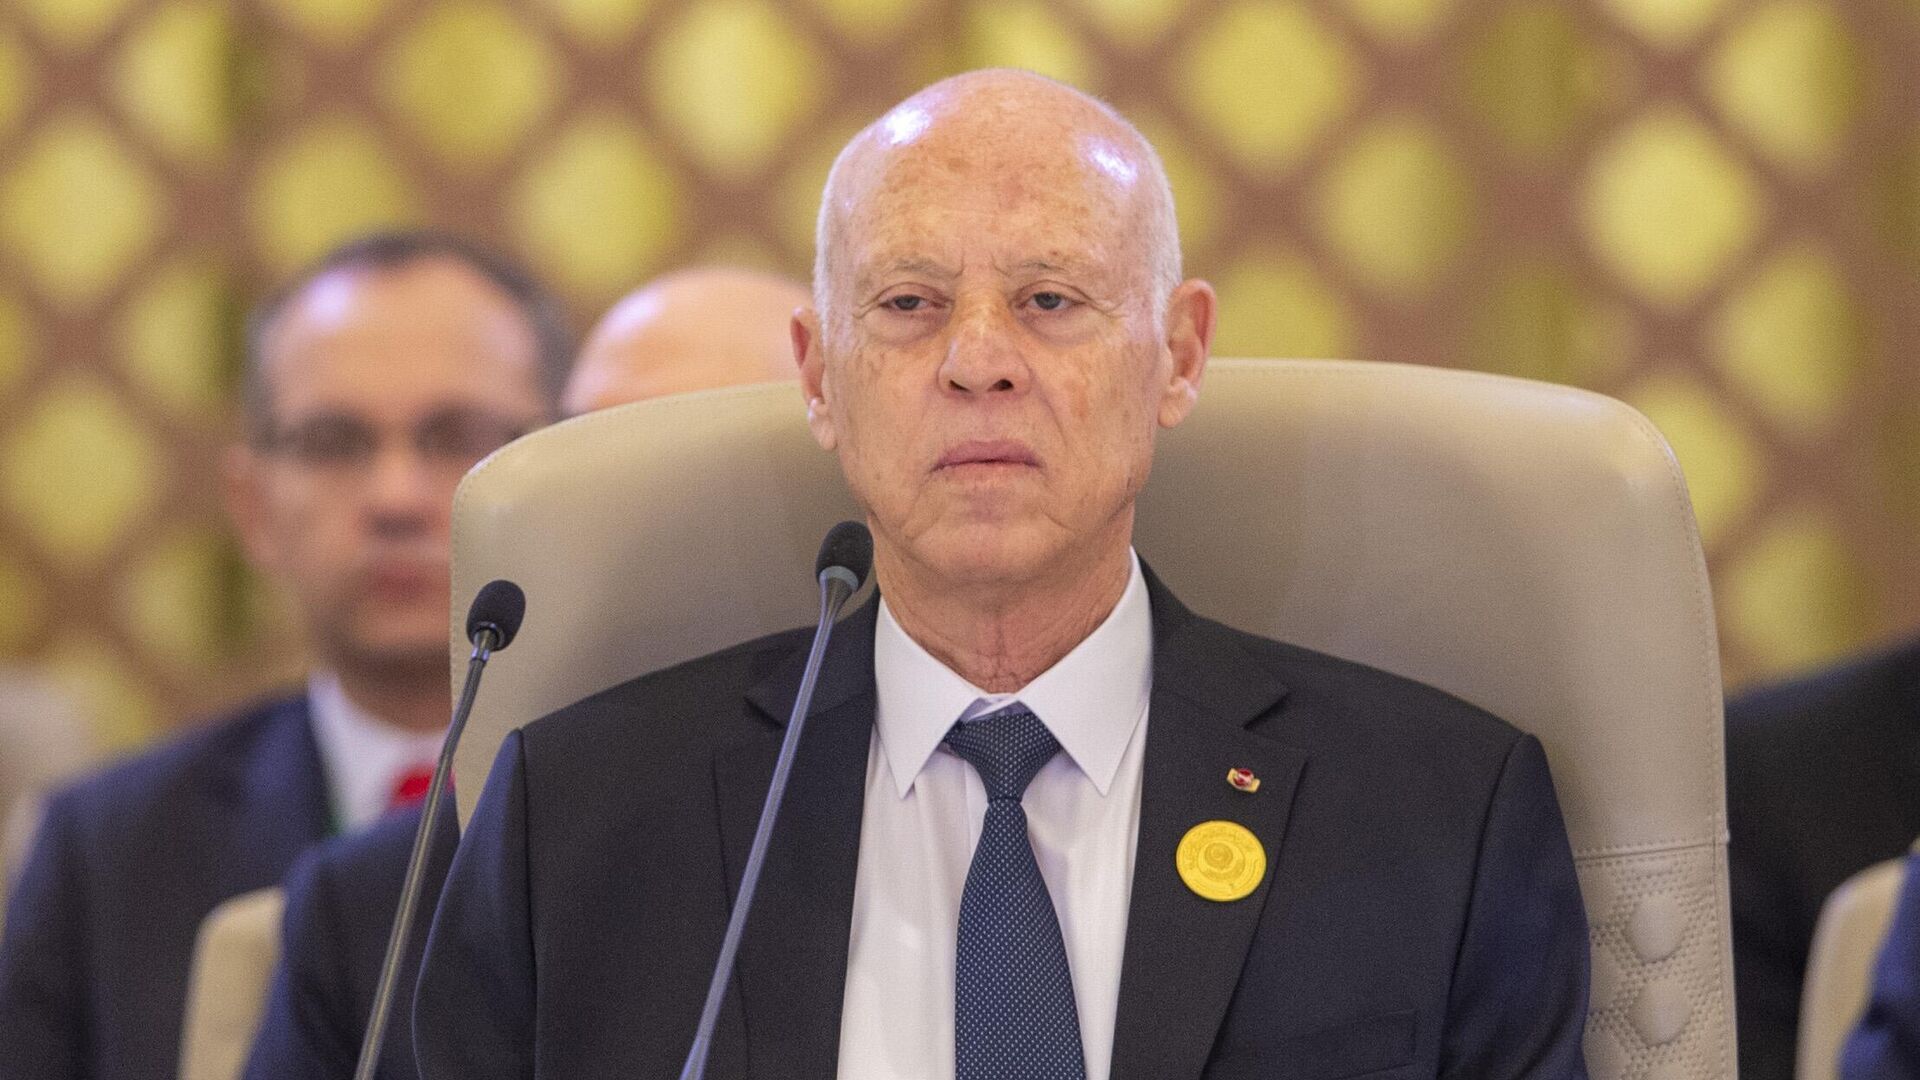 قرار إقالة موظفة بسبب مطالبة استرداد مبلغ بلغ 10 مليارات دولار: سخرية واستياء في تونس